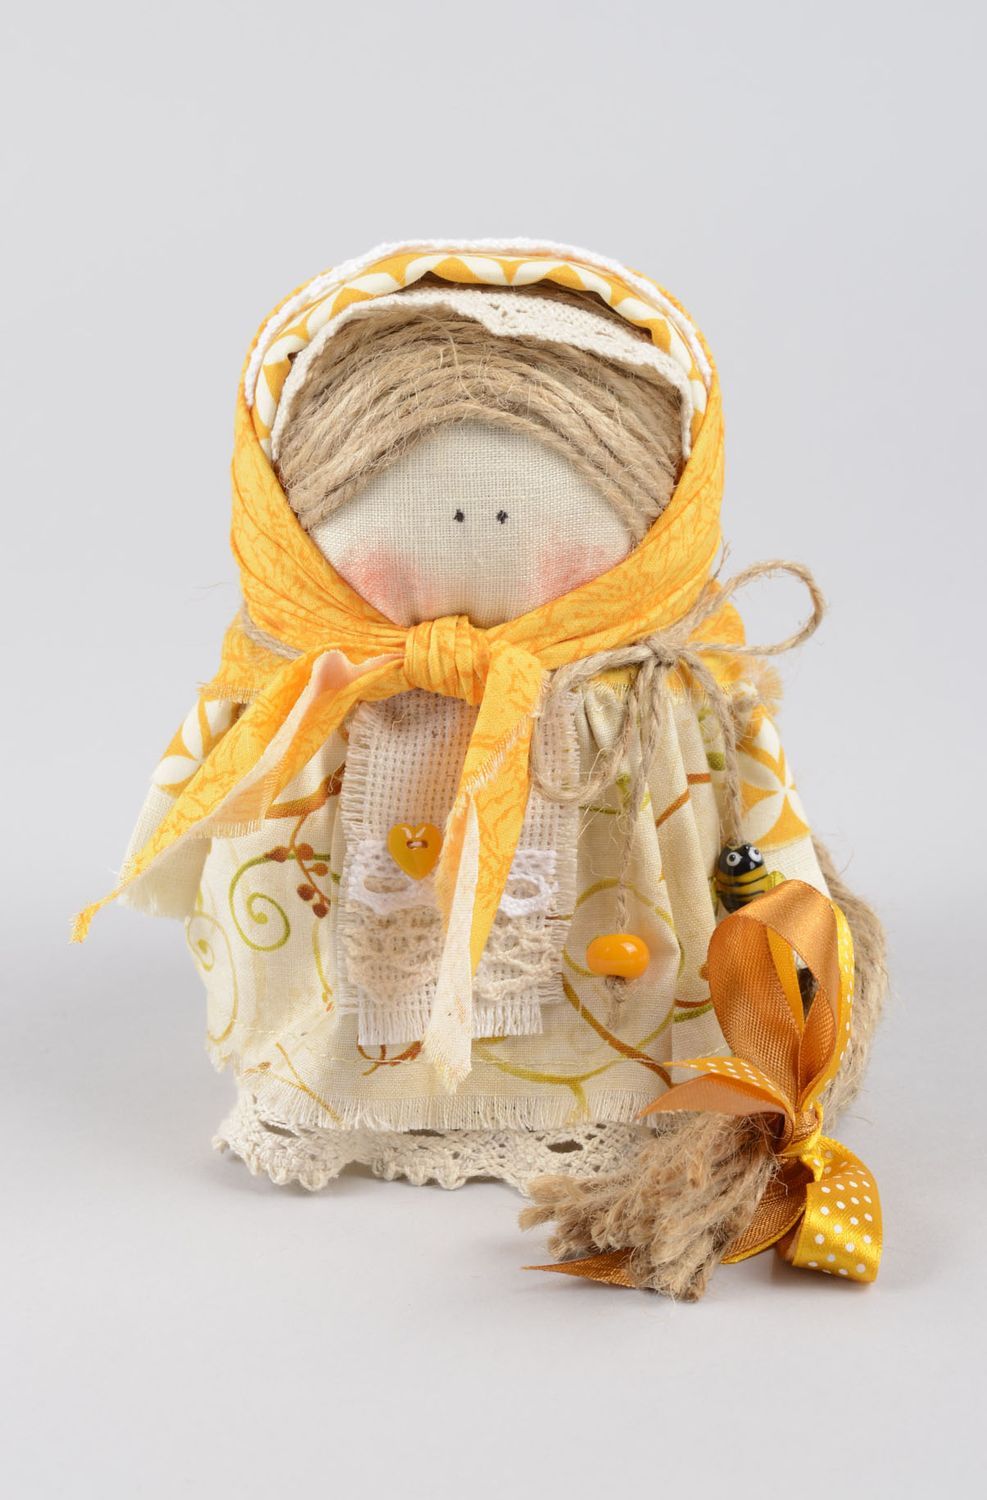 Puppe handgemacht Geschenk Idee schönes Spielzeug Deko Puppe Amulett schön  foto 1